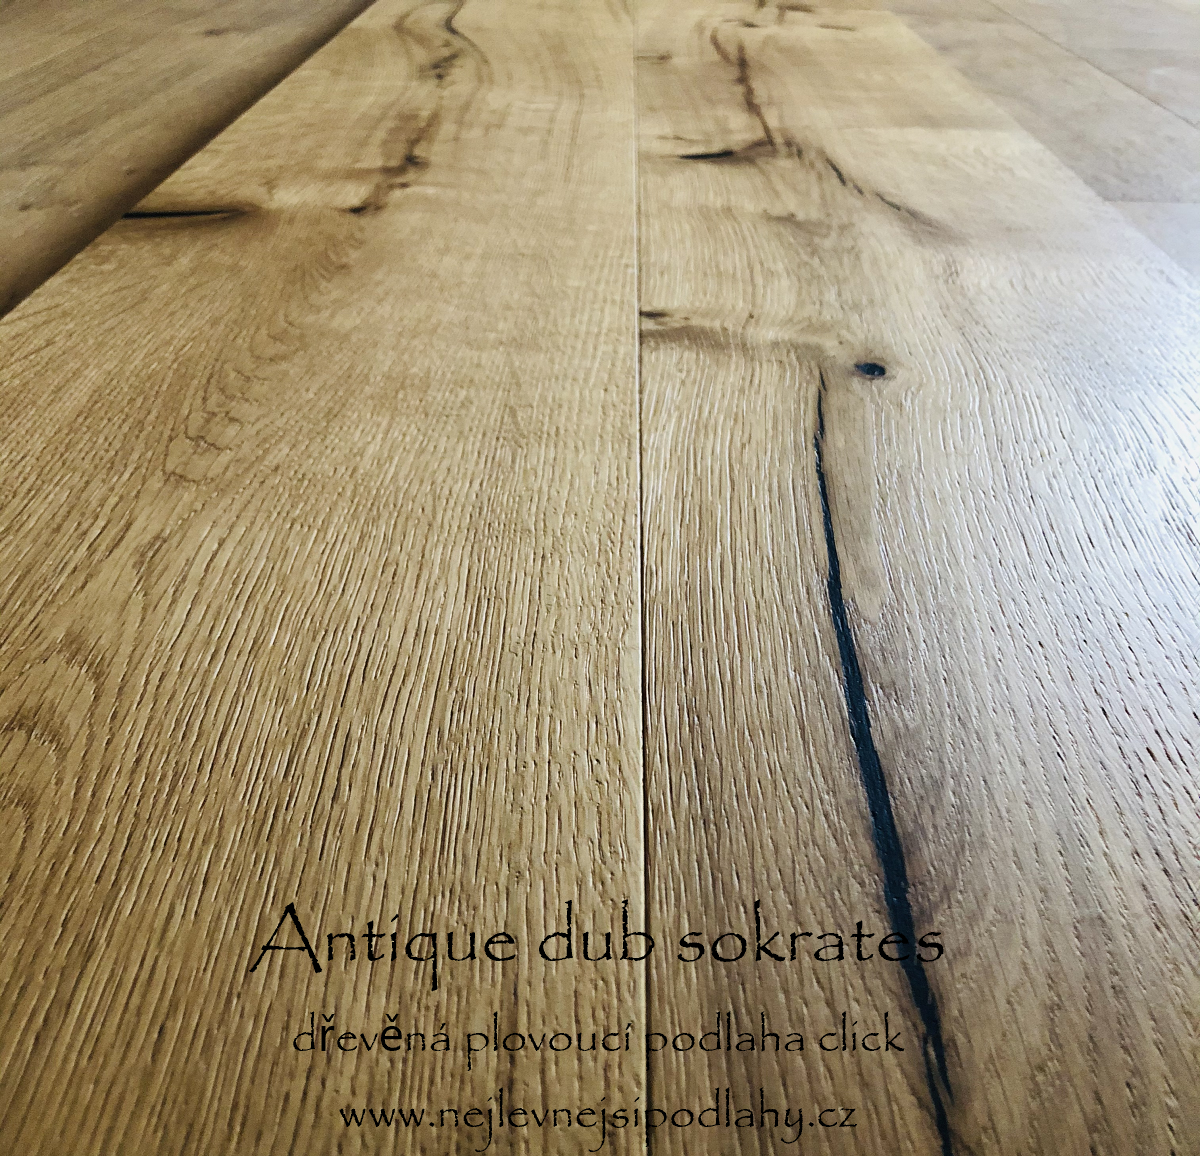  Dřevěná_plovoucí_podlaha_Antique_dub_sokrates